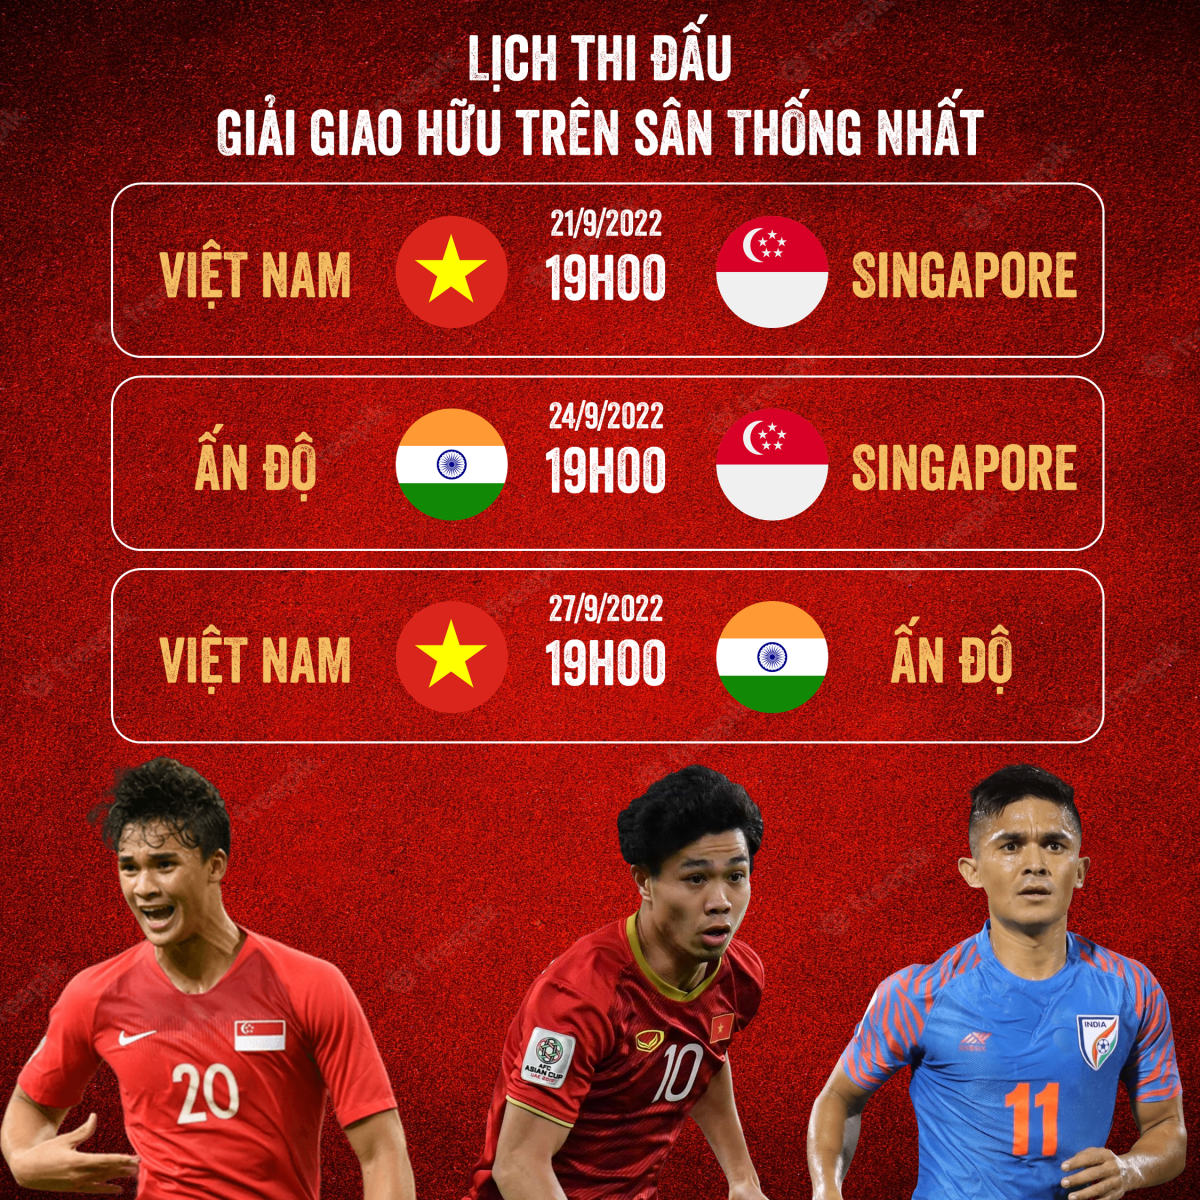 ĐT Việt Nam – ĐT Singapore: Bài kiểm tra “thực chiến” cho AFF Cup